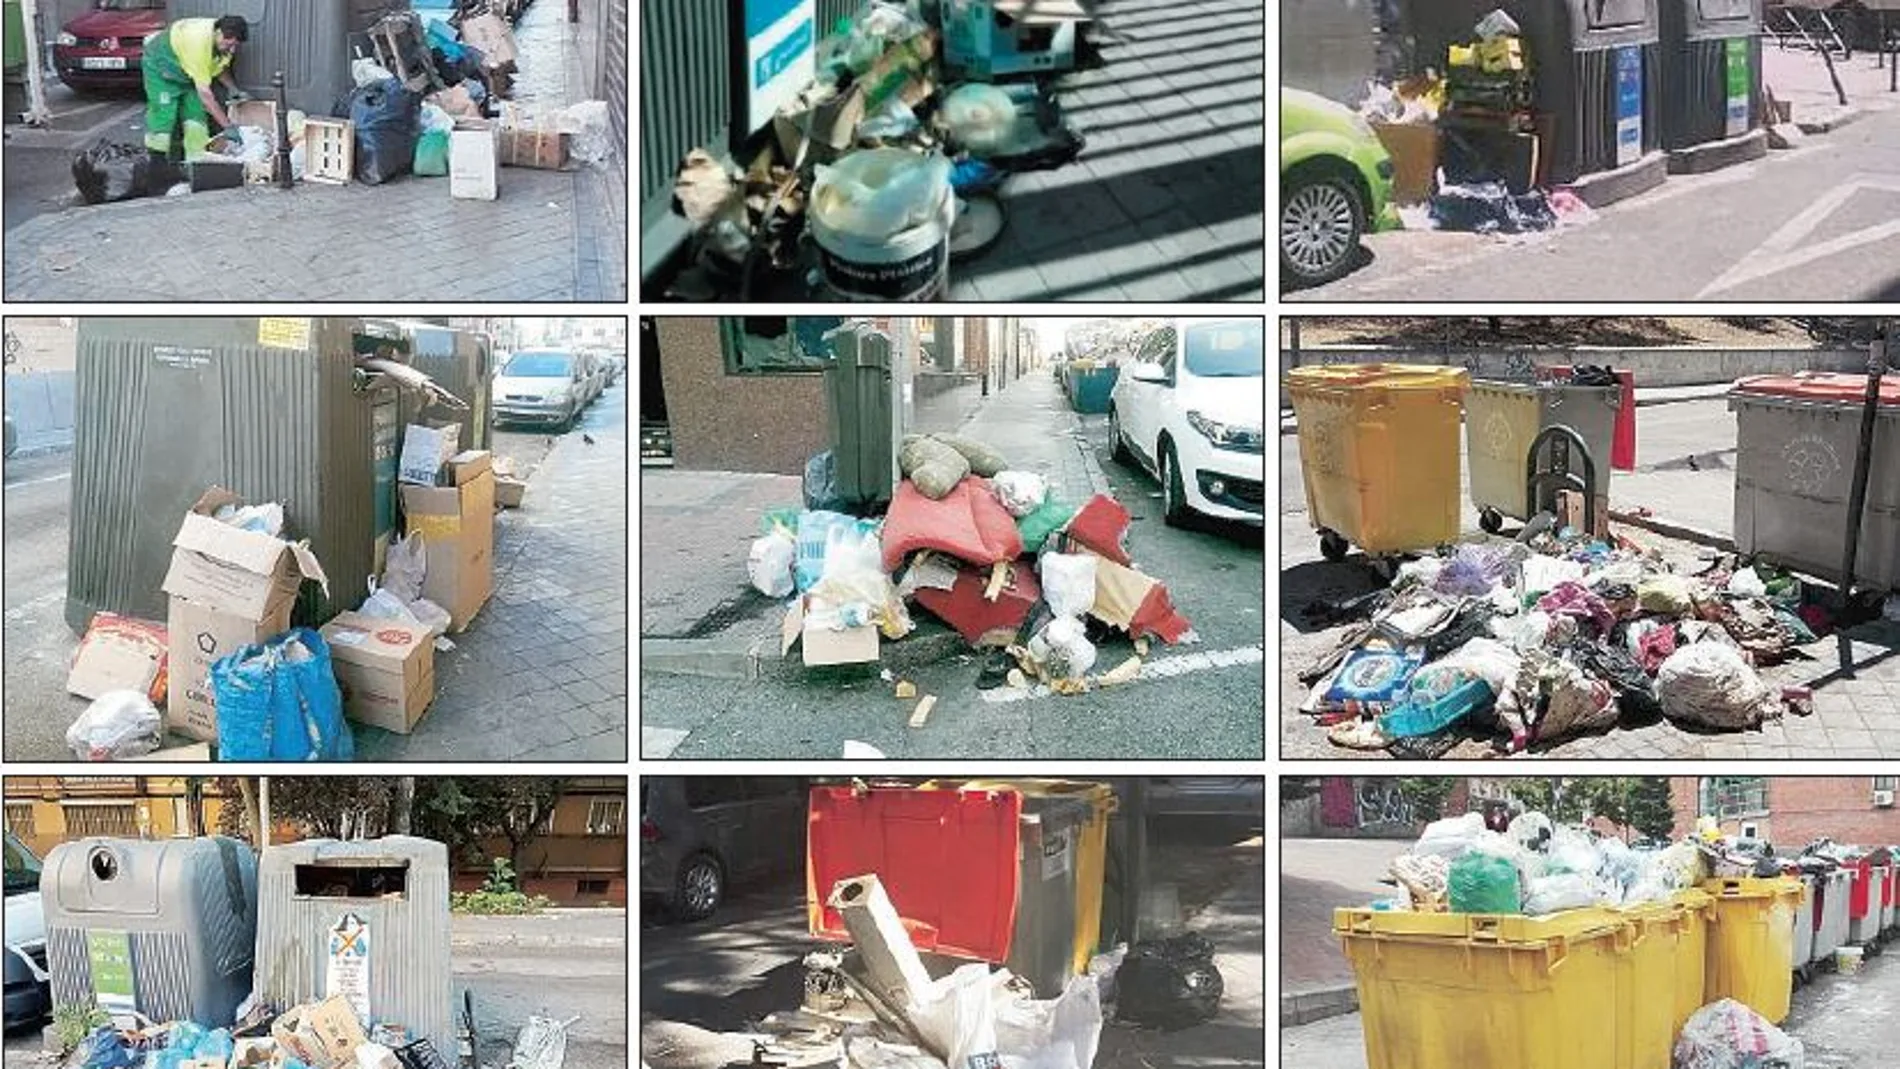 Imágenes de la acumulación de basura en algunas calles de Usera como las de Nicolás Sánchez, Elisa, Eugenio Caxes, Santa María de la Cabeza, Marcelo Usera o San Magín, entre otras